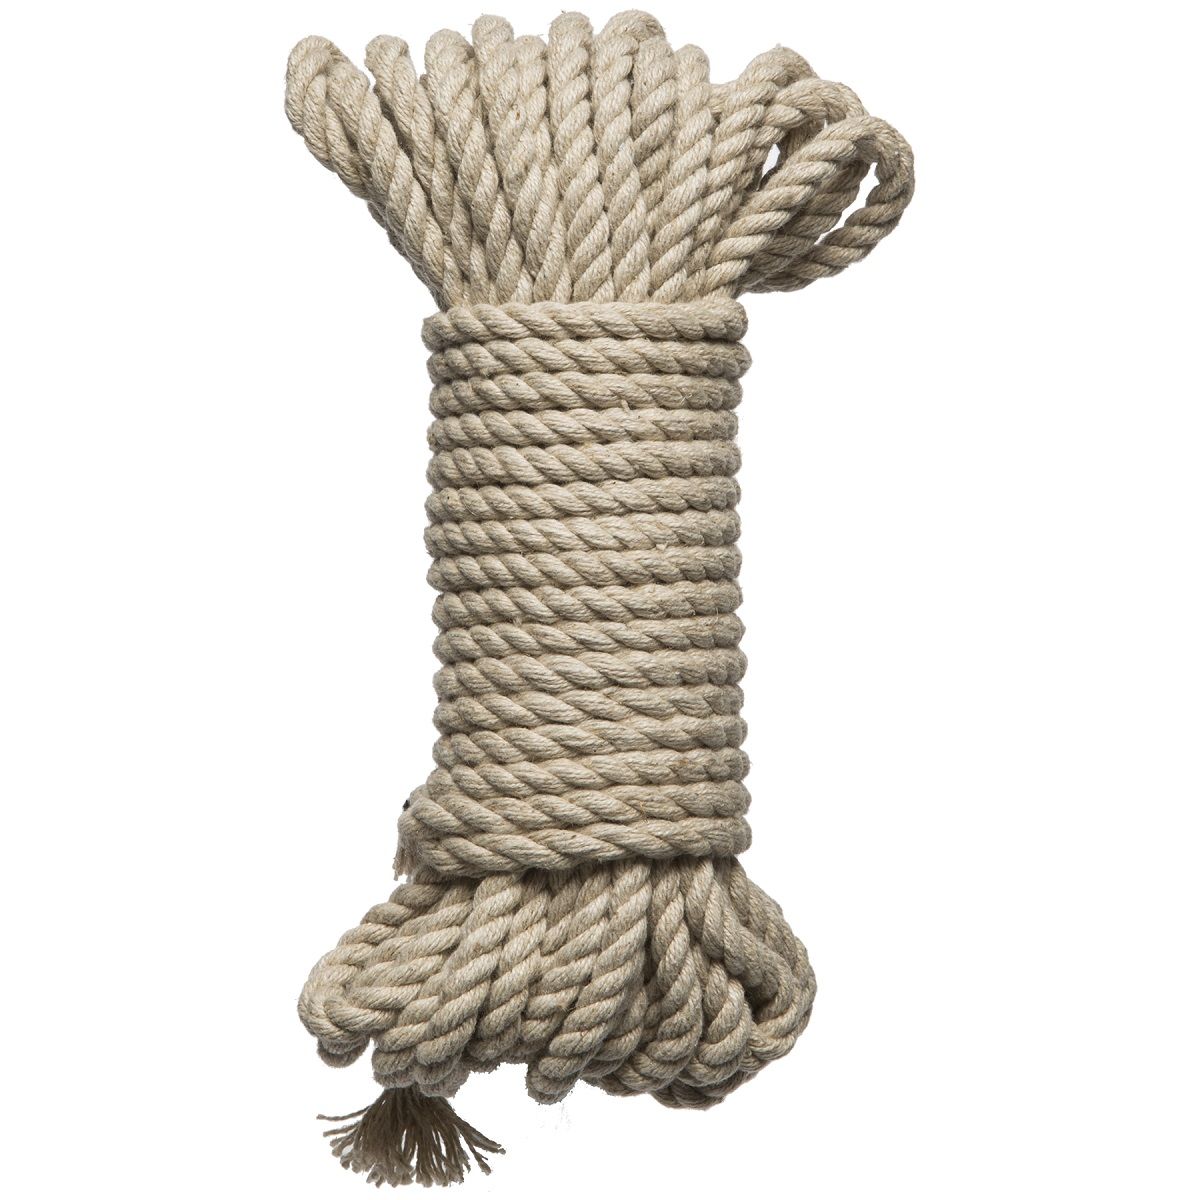 Бондажная пеньковая верёвка Kink Bind   Tie Hemp Bondage Rope 30 Ft - 9,1 м.